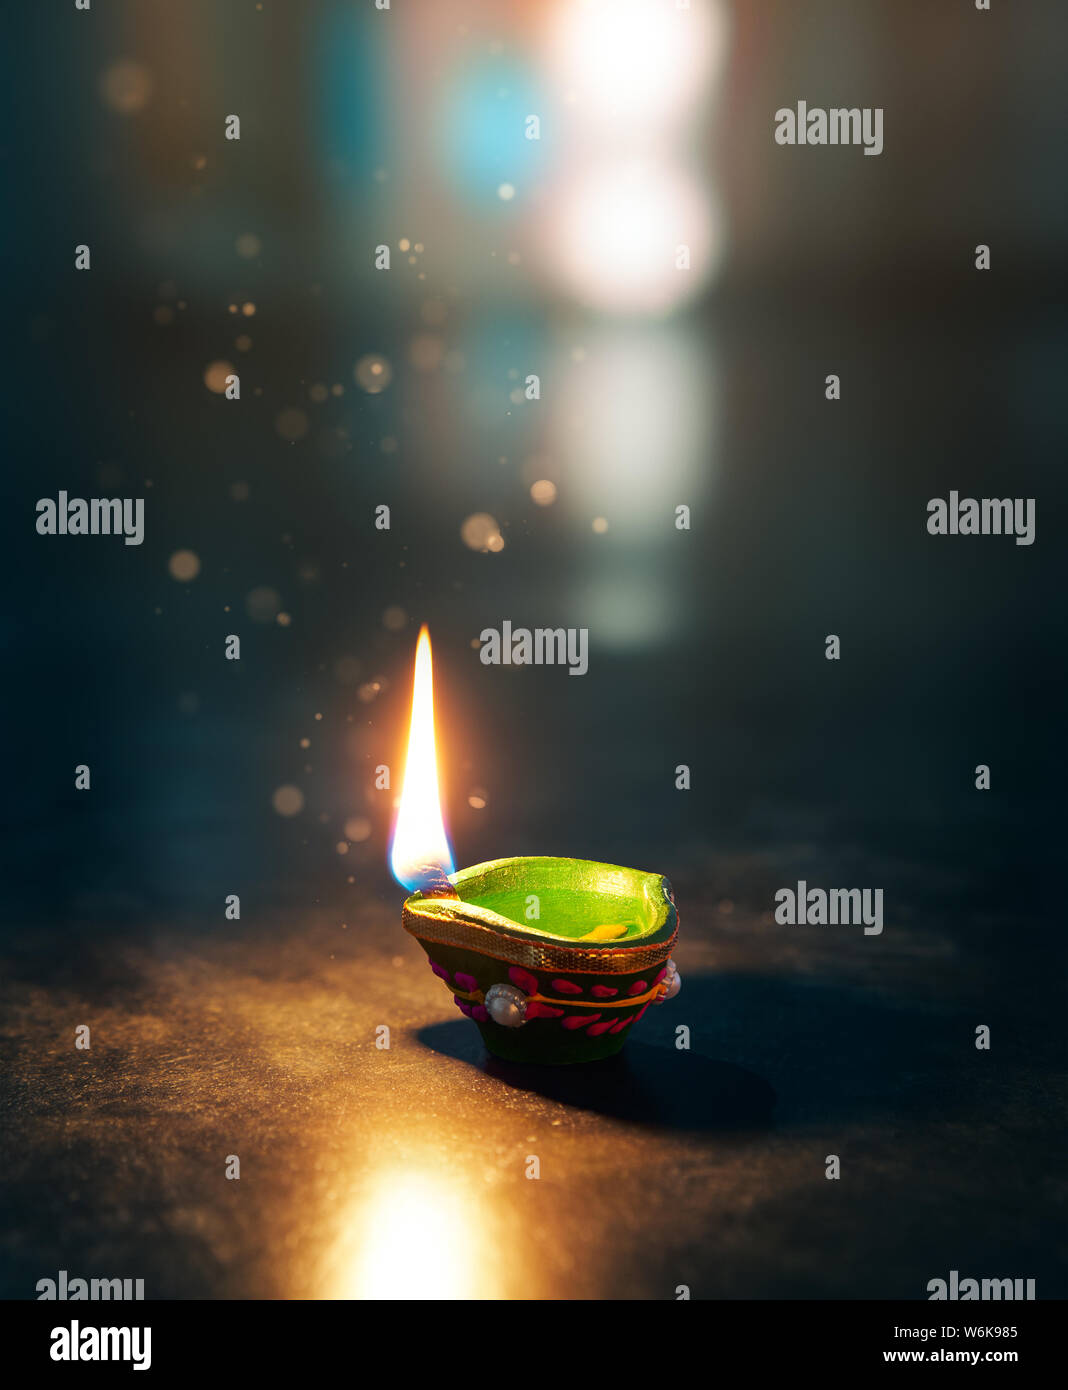 Happy Diwali - beleuchtete diya Lampe auf einem abtract Hintergrund mit geringer Tiefenschärfe Stockfoto